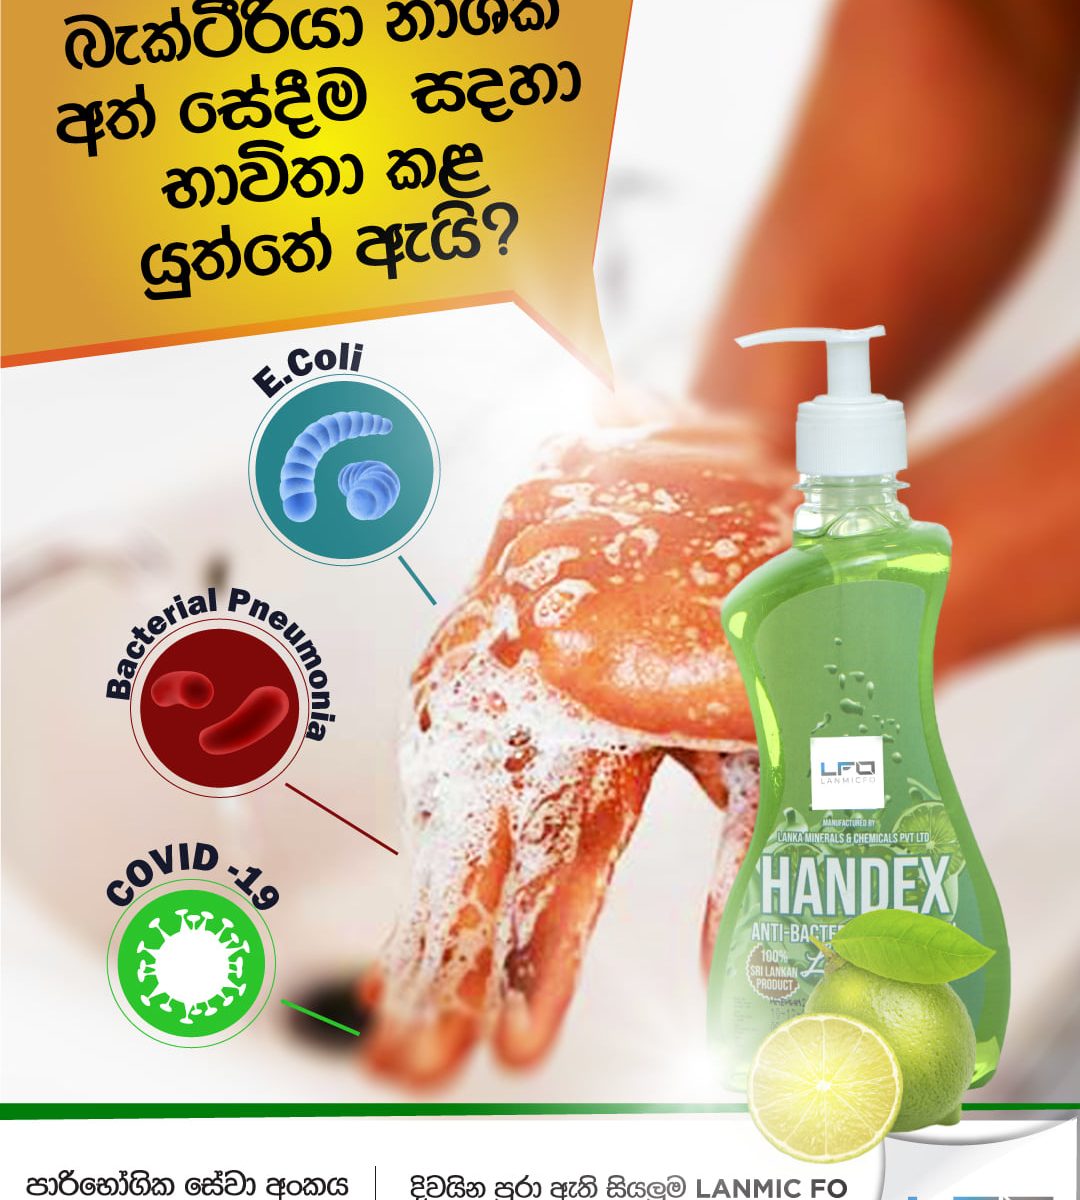 Handex Hand Wash